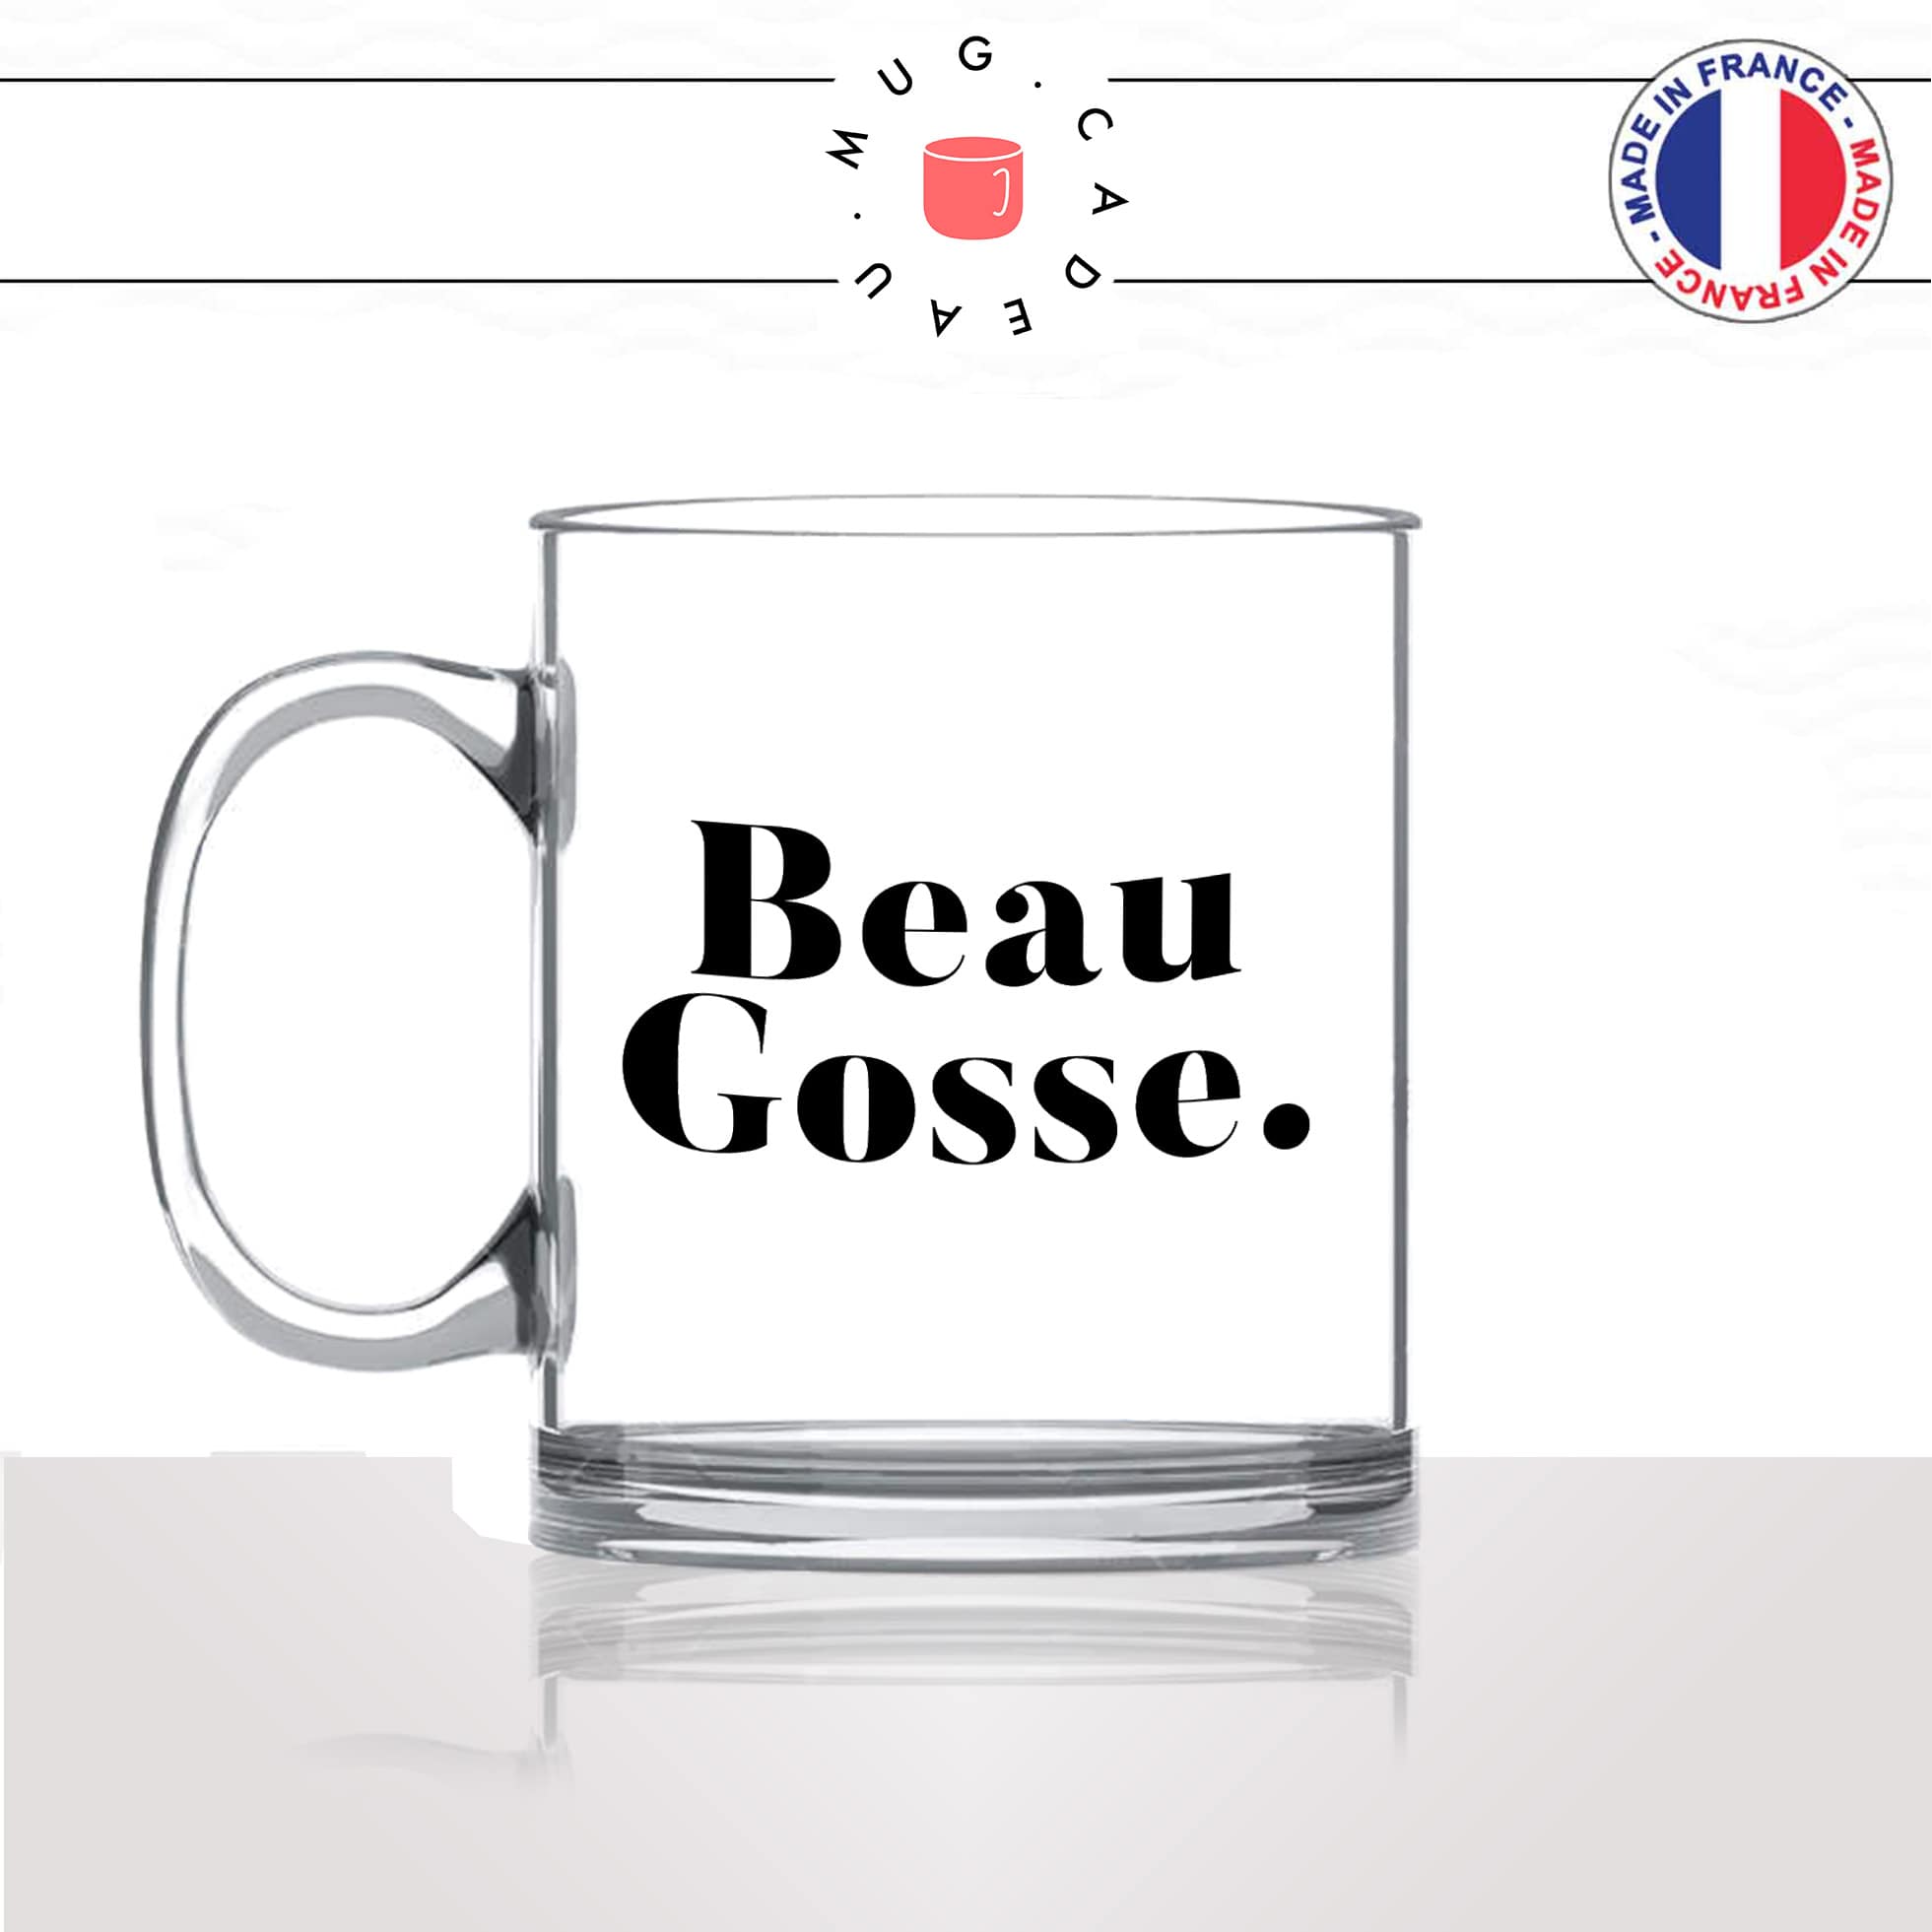 mug-tasse-en-verre-transparent-glass-beau-gosse-homme-mec-couple-st-valentin-je-taime-amour-couple-café-thé-idée-cadeau-original-personnalisé-min